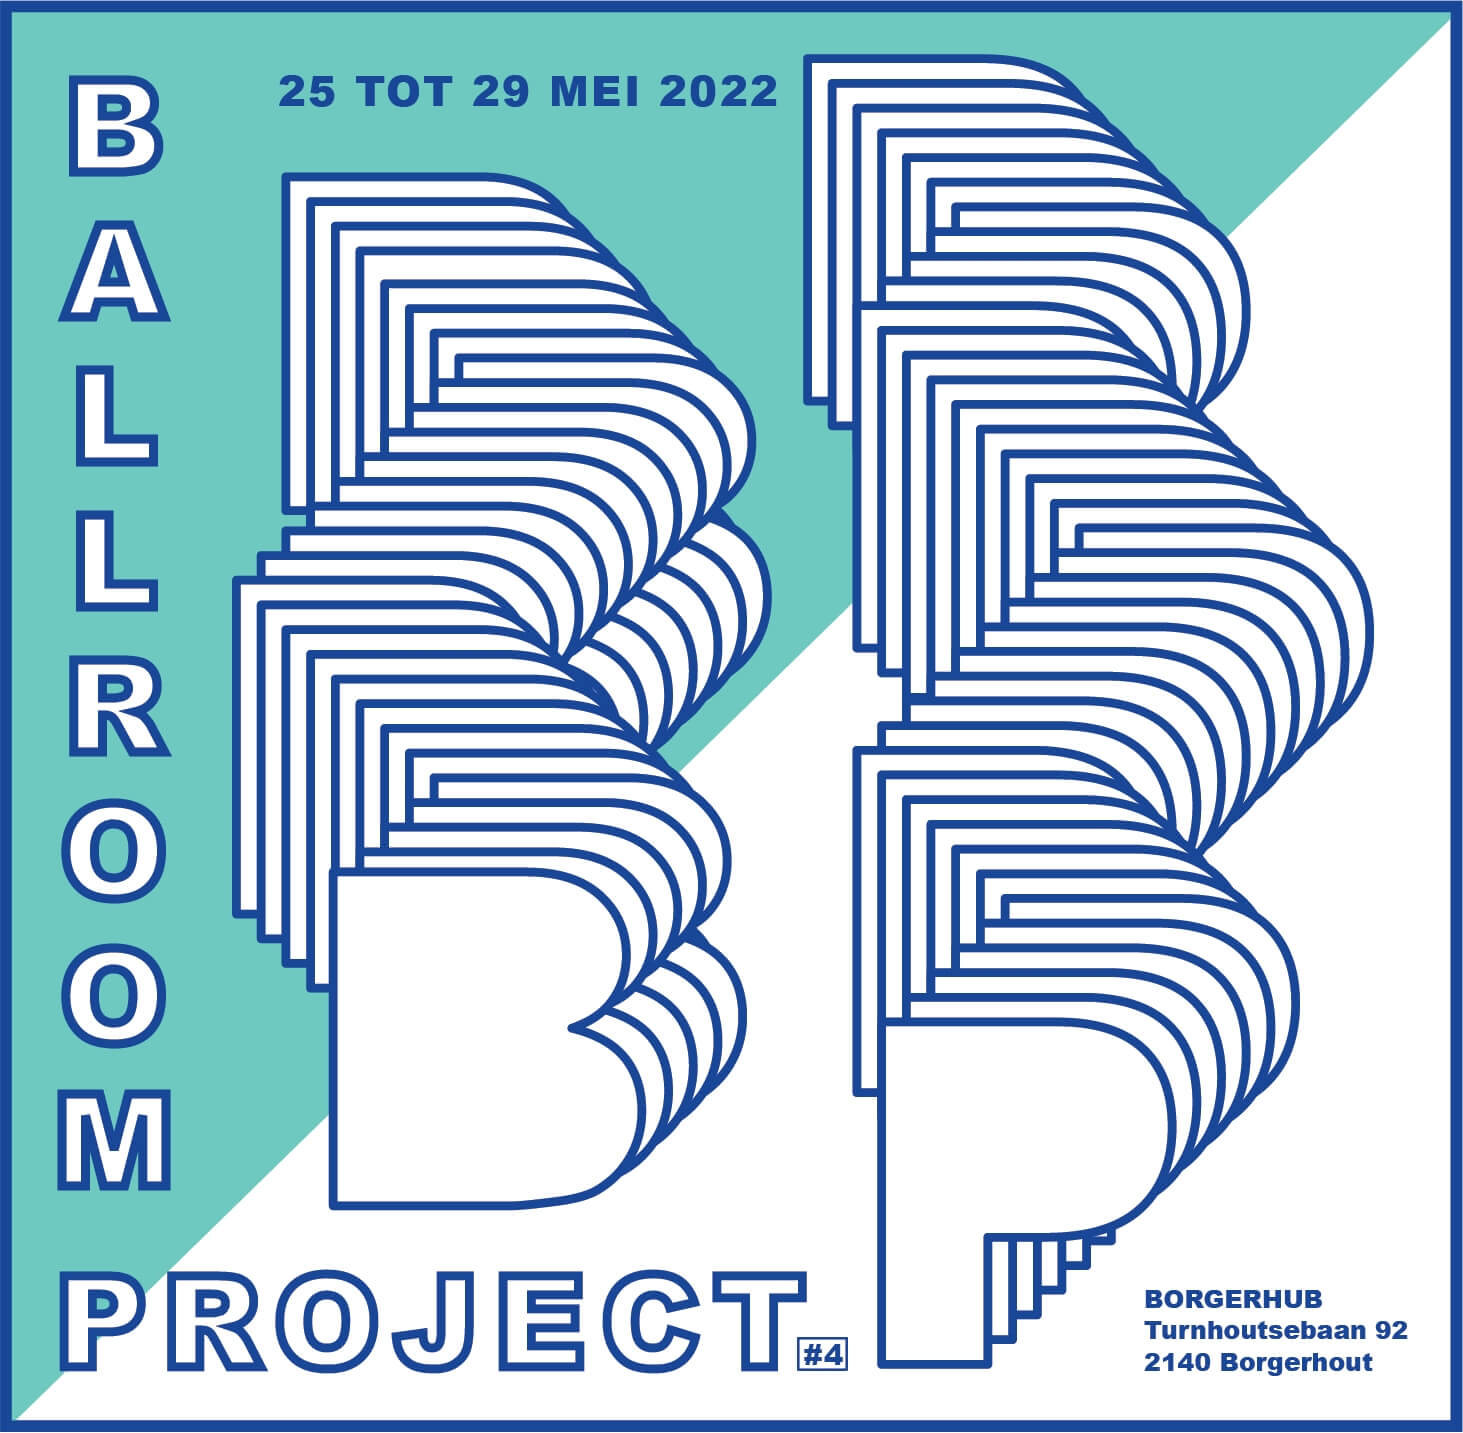 ballroom project, dmw gallery, base alpha, art fair